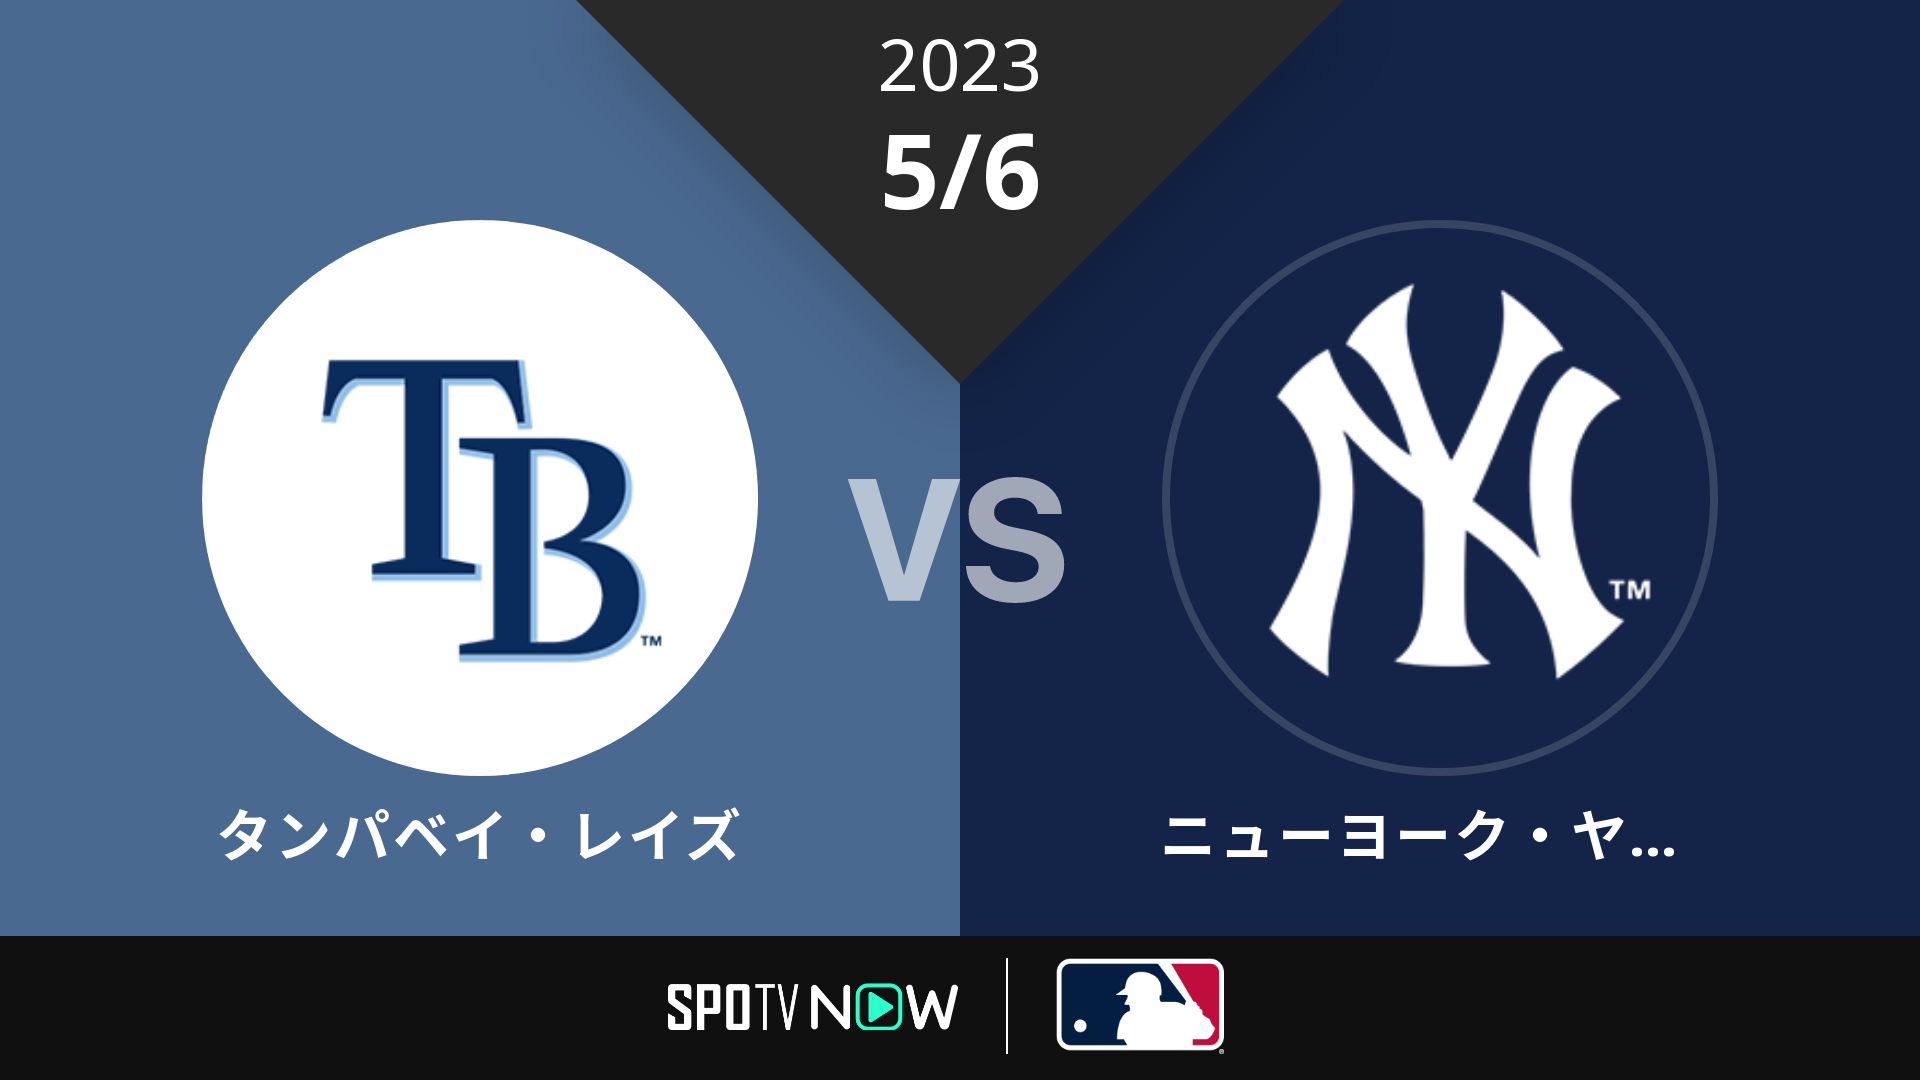 2023/5/6 レイズ vs ヤンキース [MLB]